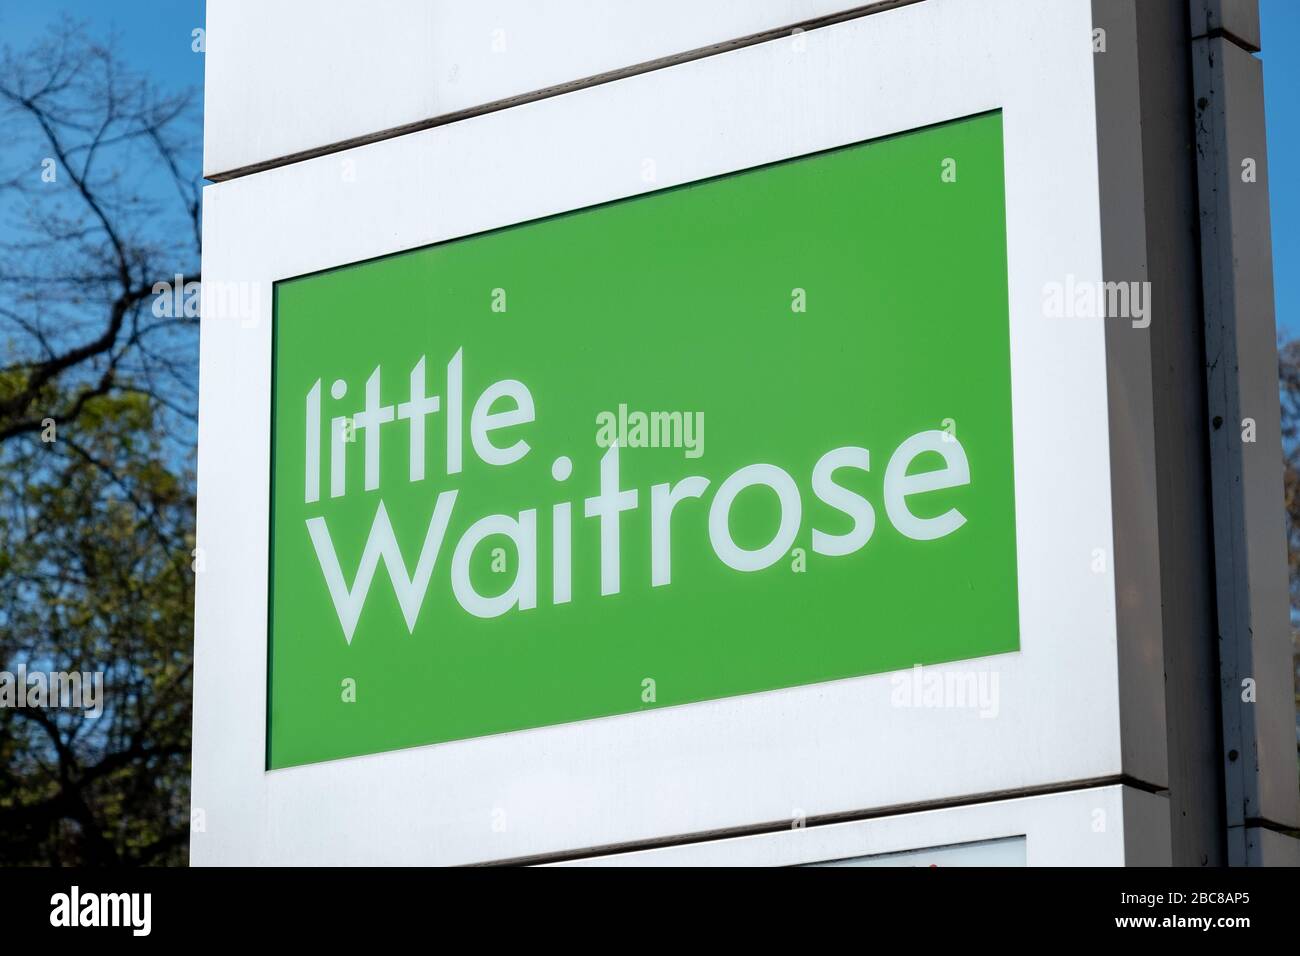 Little Waitrose - versione locale della catena di supermercati britannici - logo esterno / segnaletica - Londra Foto Stock